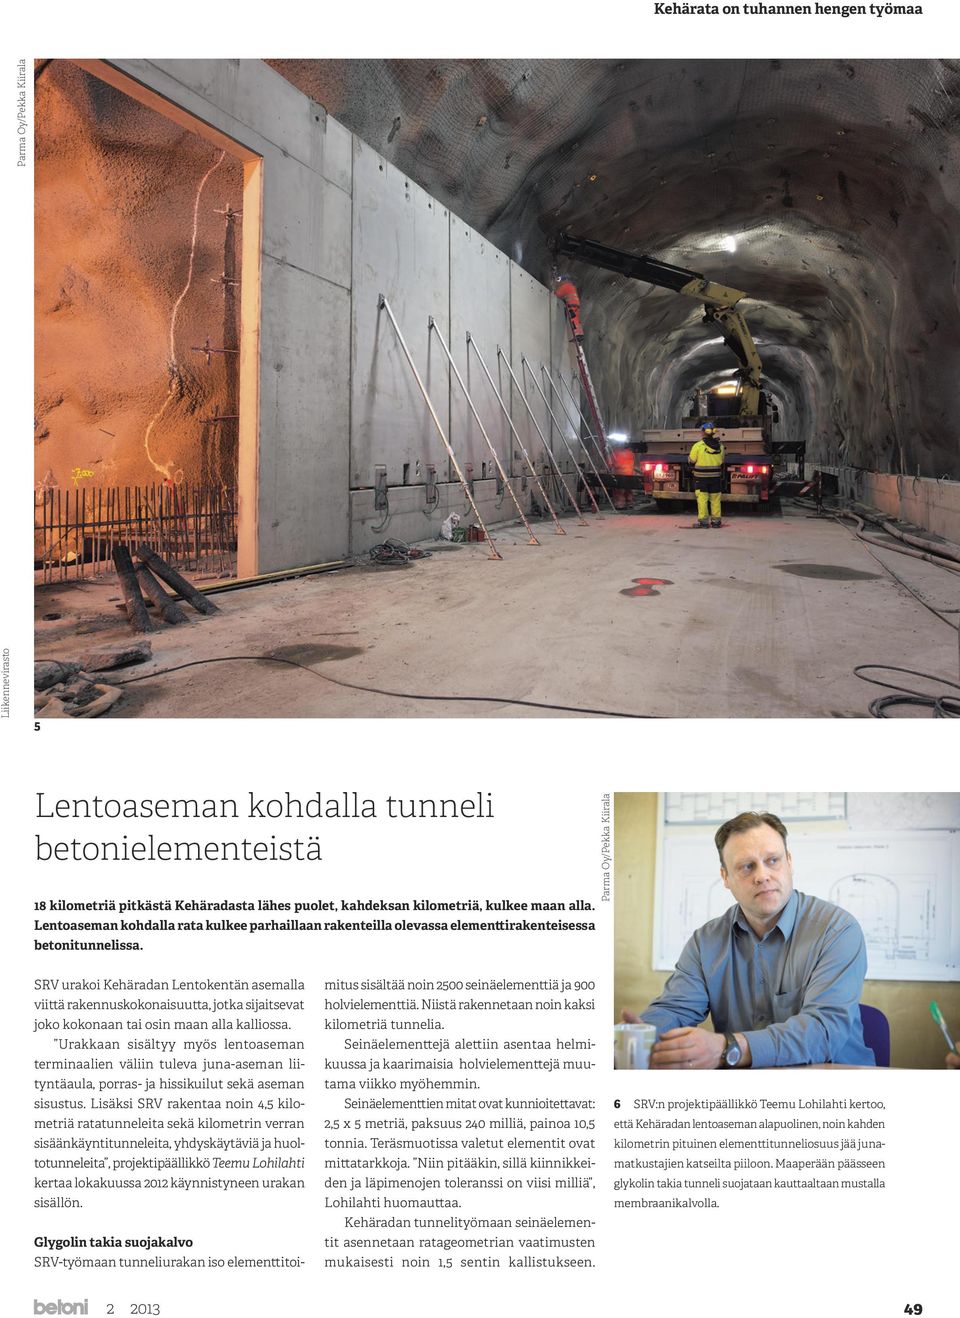 Parma Oy/Pekka Kiirala SRV urakoi Kehäradan Lentokentän asemalla viittä rakennuskokonaisuutta, jotka sijaitsevat joko kokonaan tai osin maan alla kalliossa.